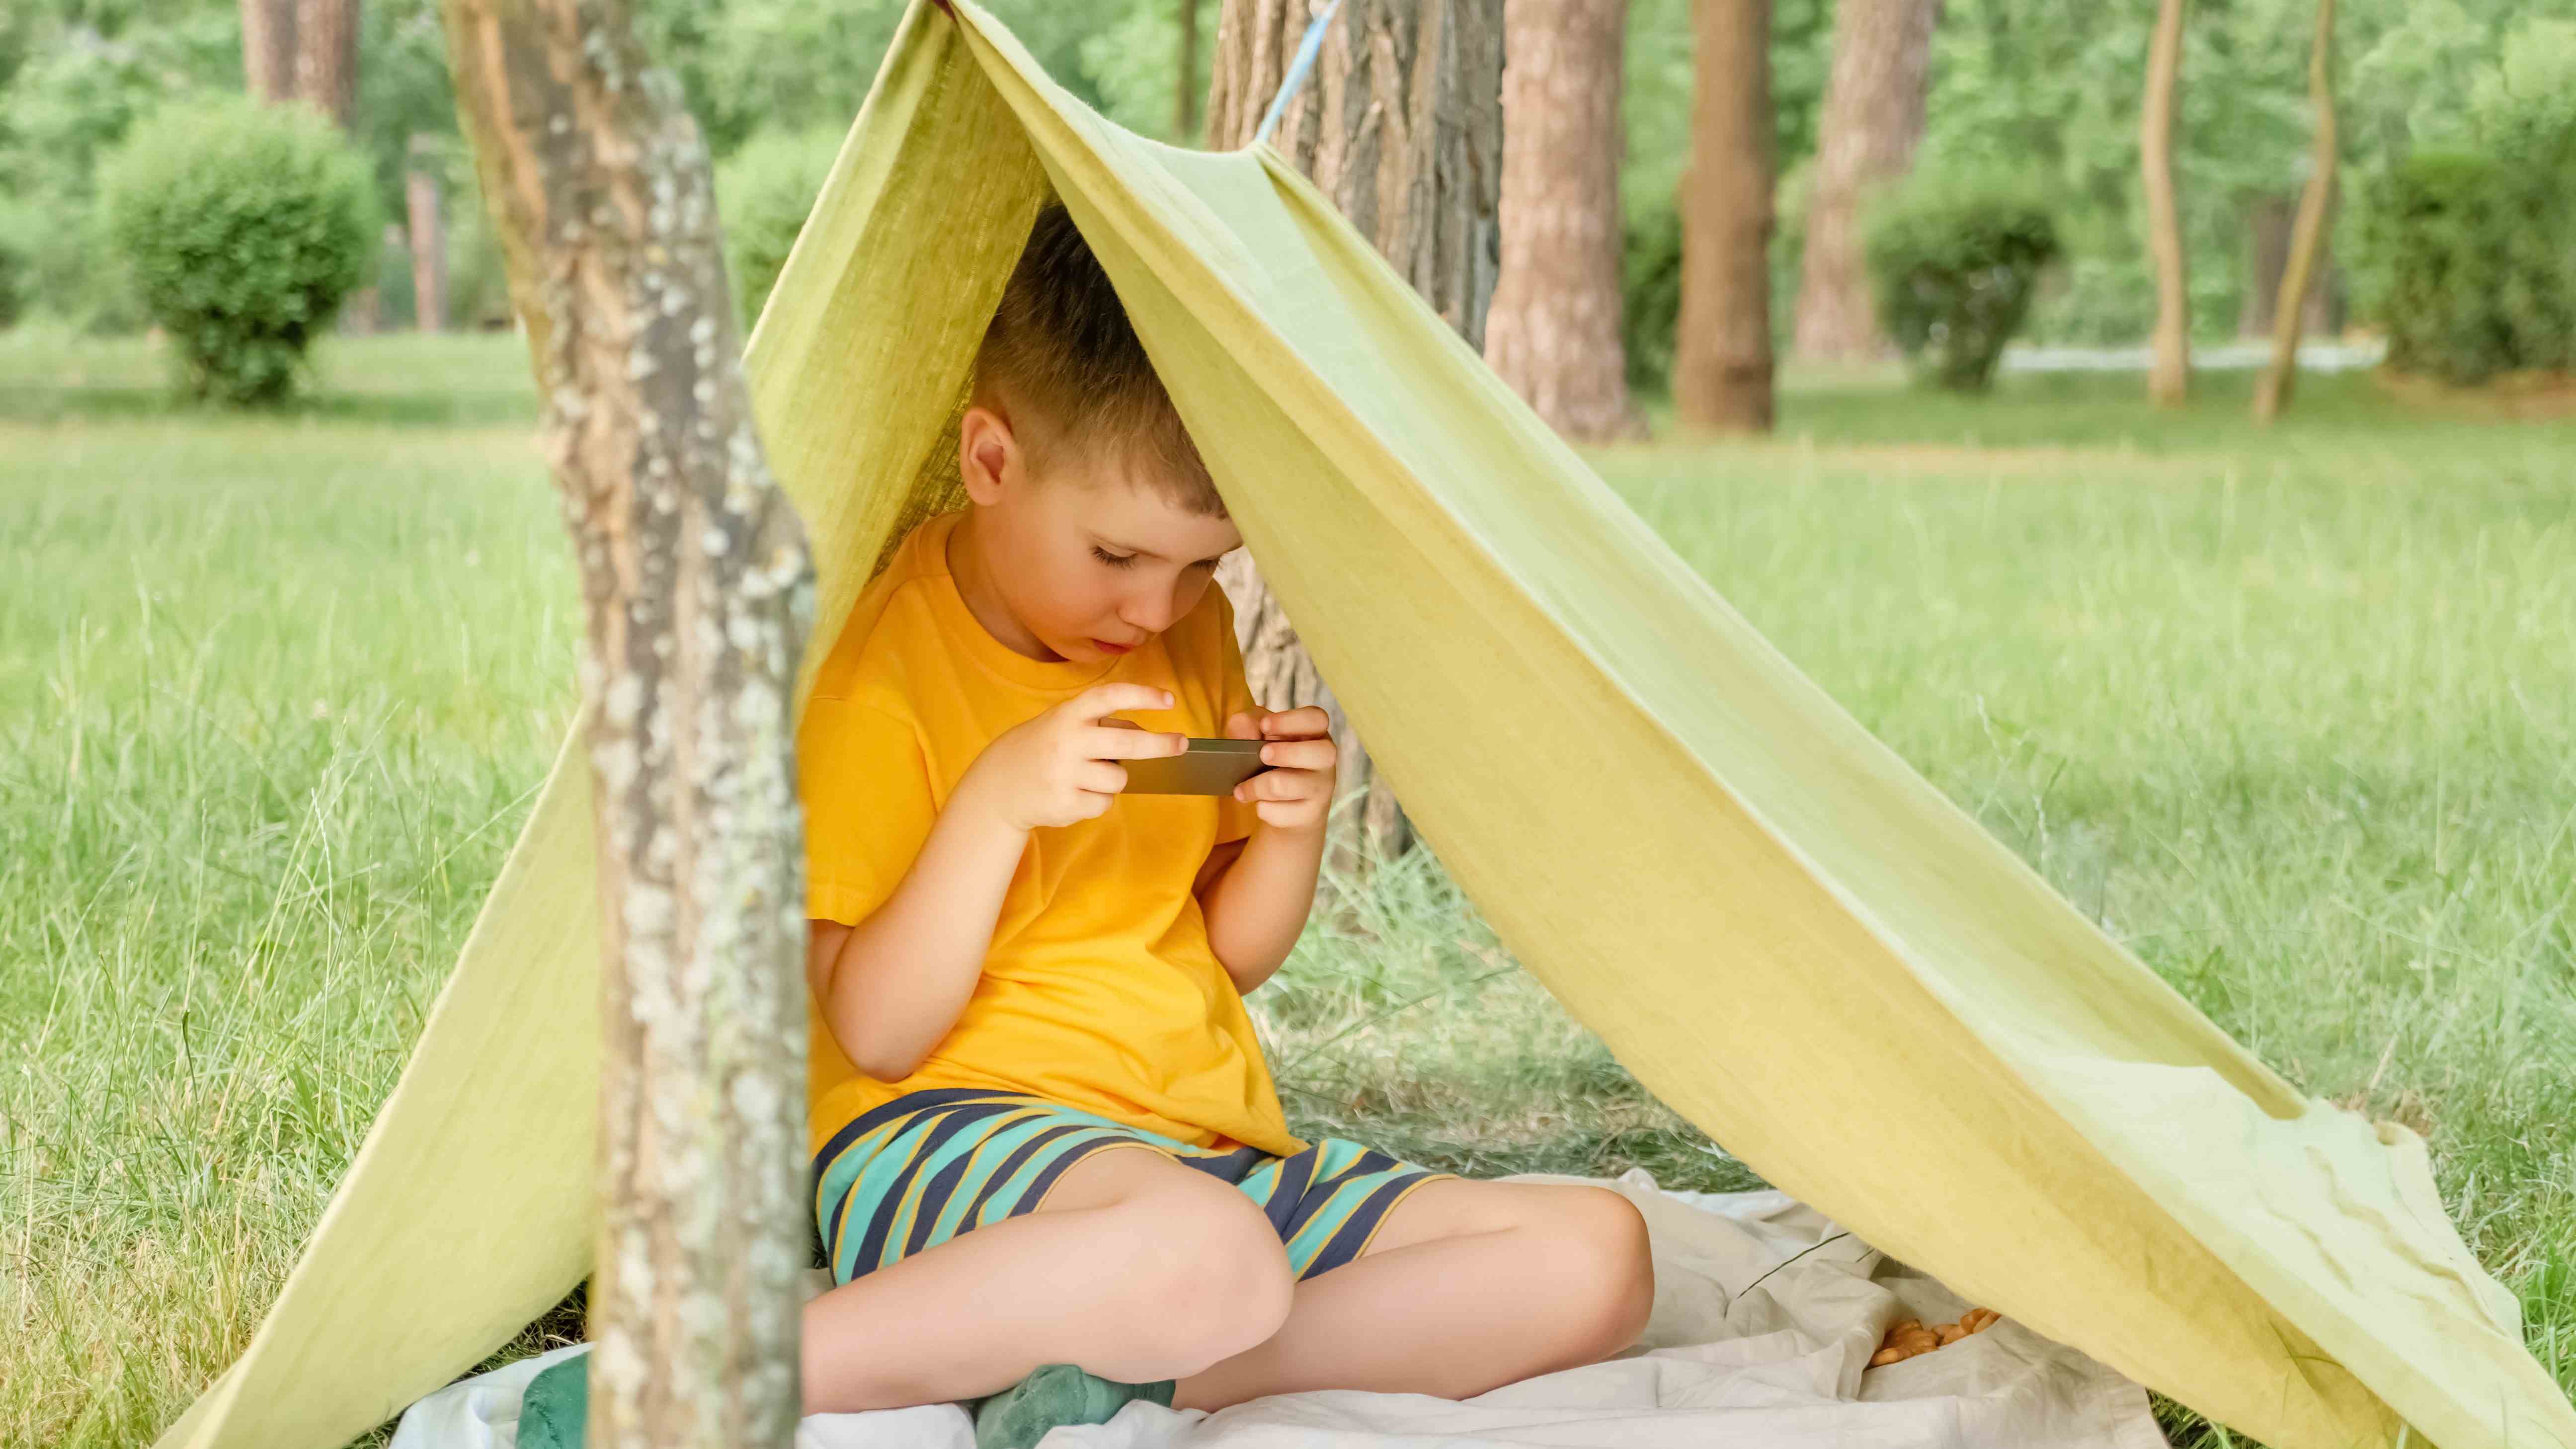 Ormanda derme çatma bir çadırda otururken telefonunda Netflix izleyen küçük bir çocuk